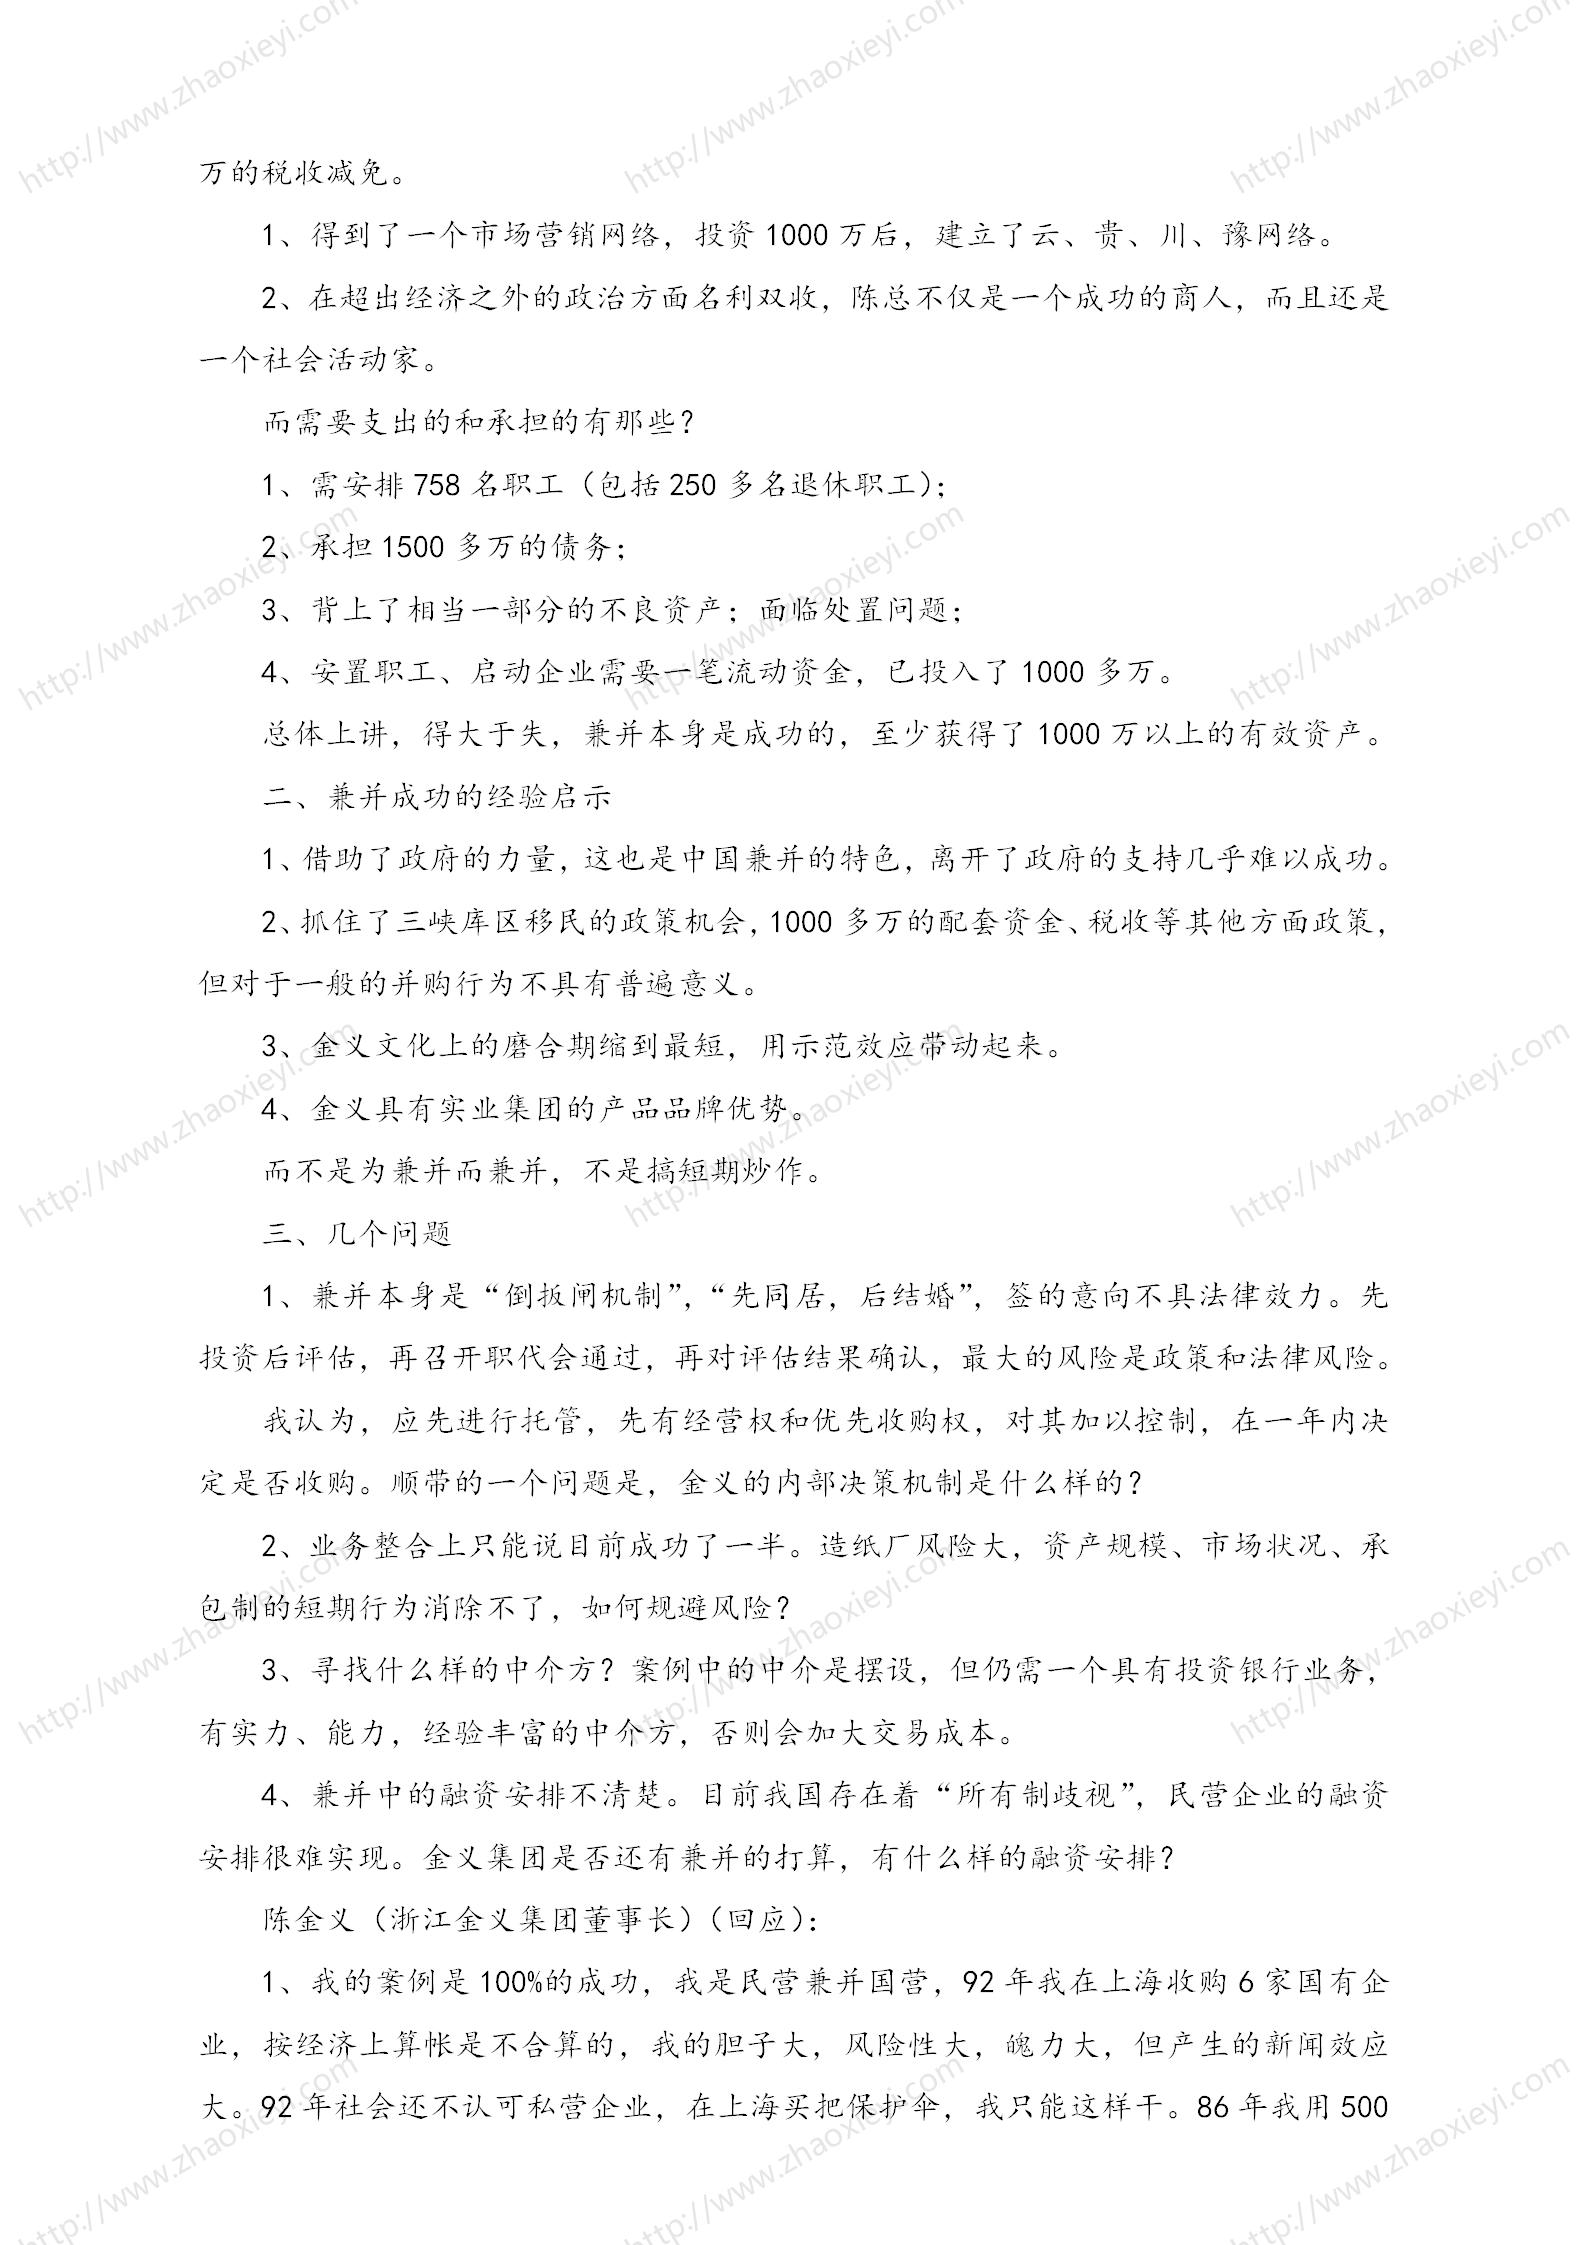 中国企业并购经典案例_140.jpg